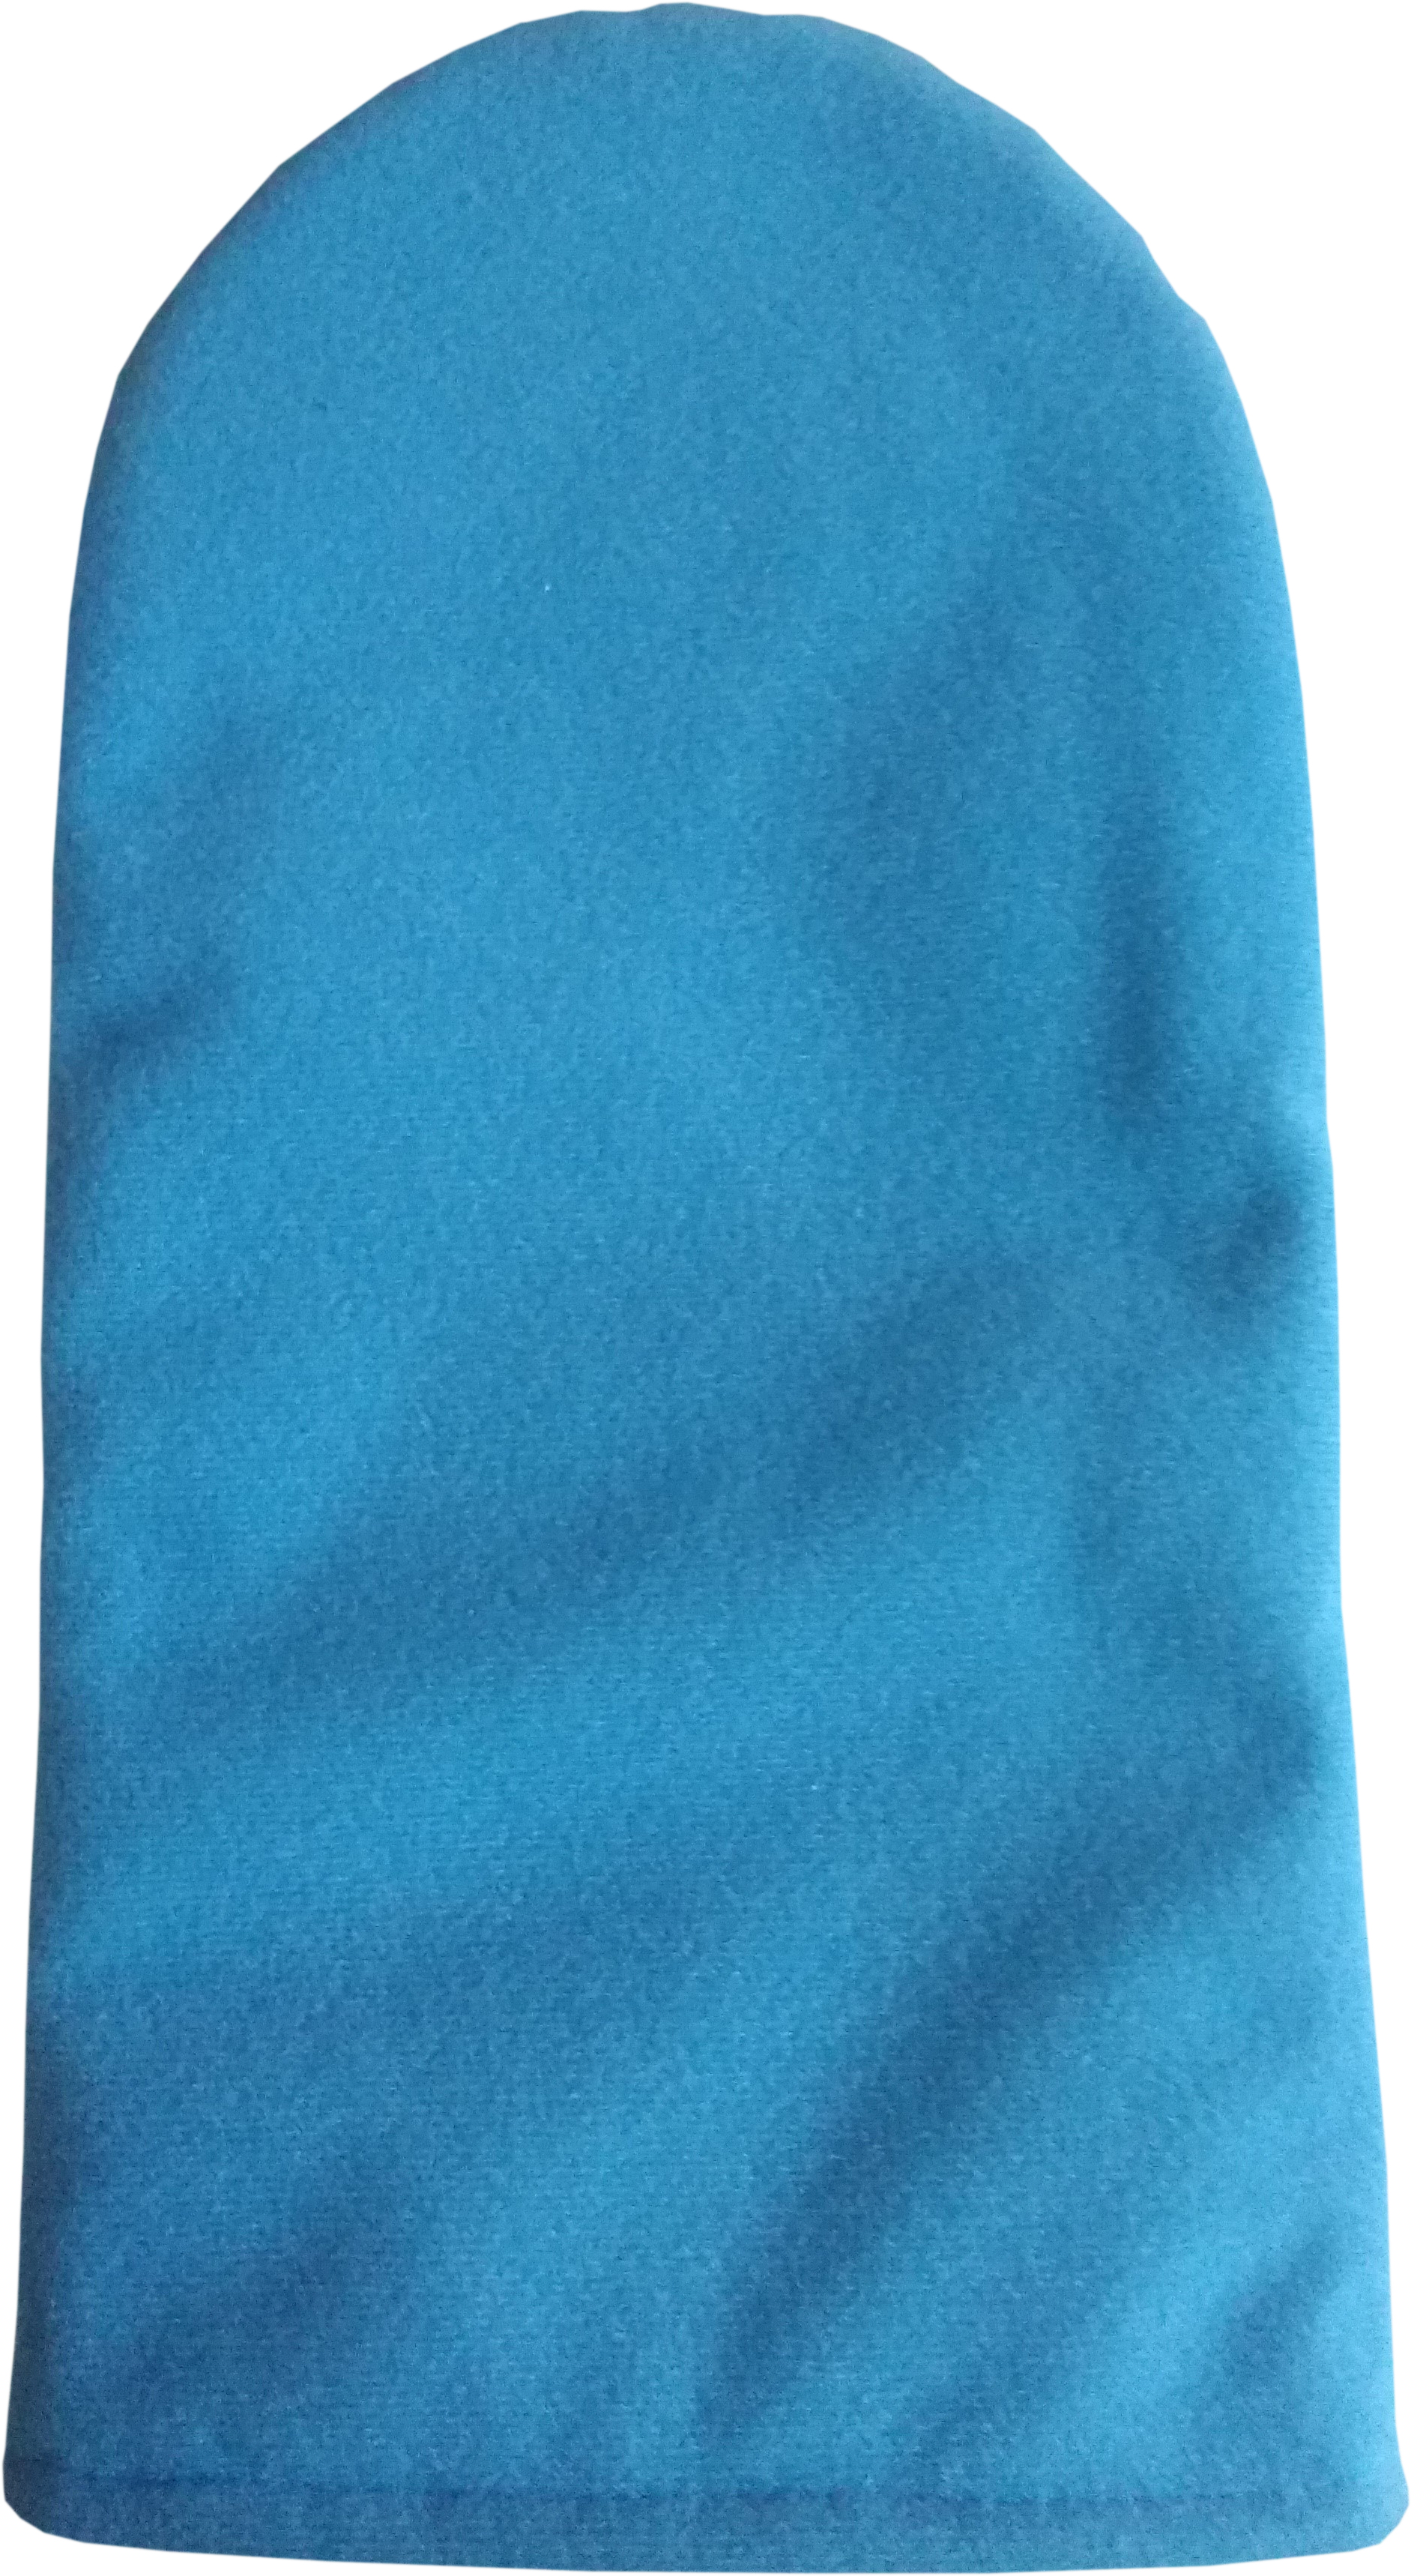 MoVeS warmtebehoudende handschoenen voor Paraffinebad Pro - blauw - 1 paar